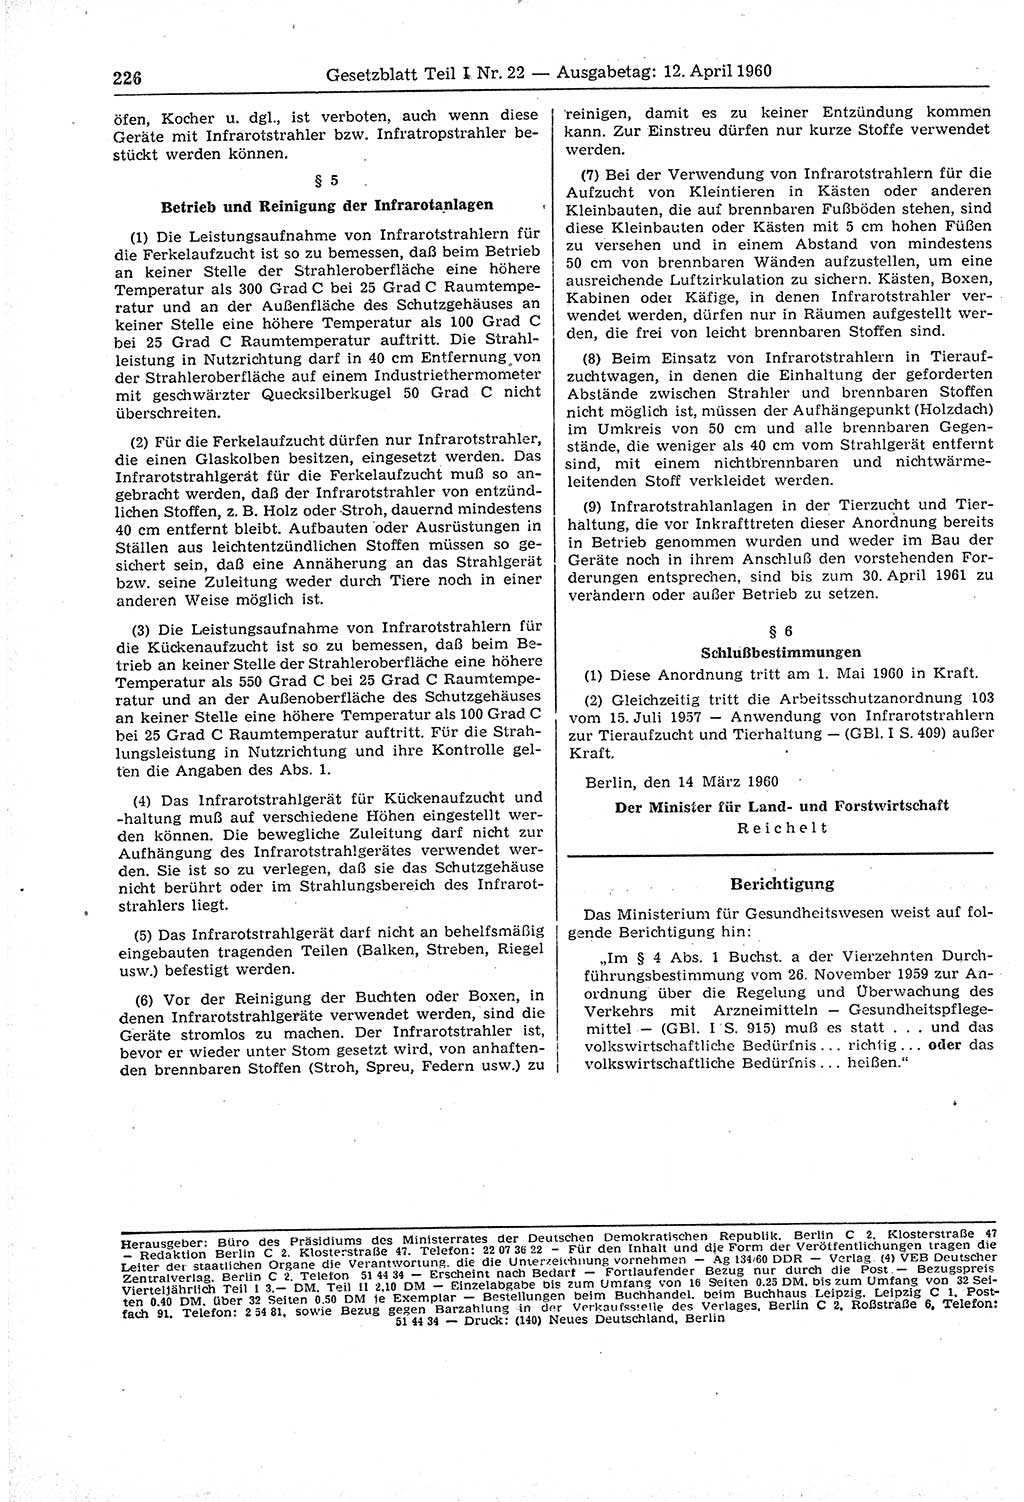 Gesetzblatt (GBl.) der Deutschen Demokratischen Republik (DDR) Teil Ⅰ 1960, Seite 226 (GBl. DDR Ⅰ 1960, S. 226)